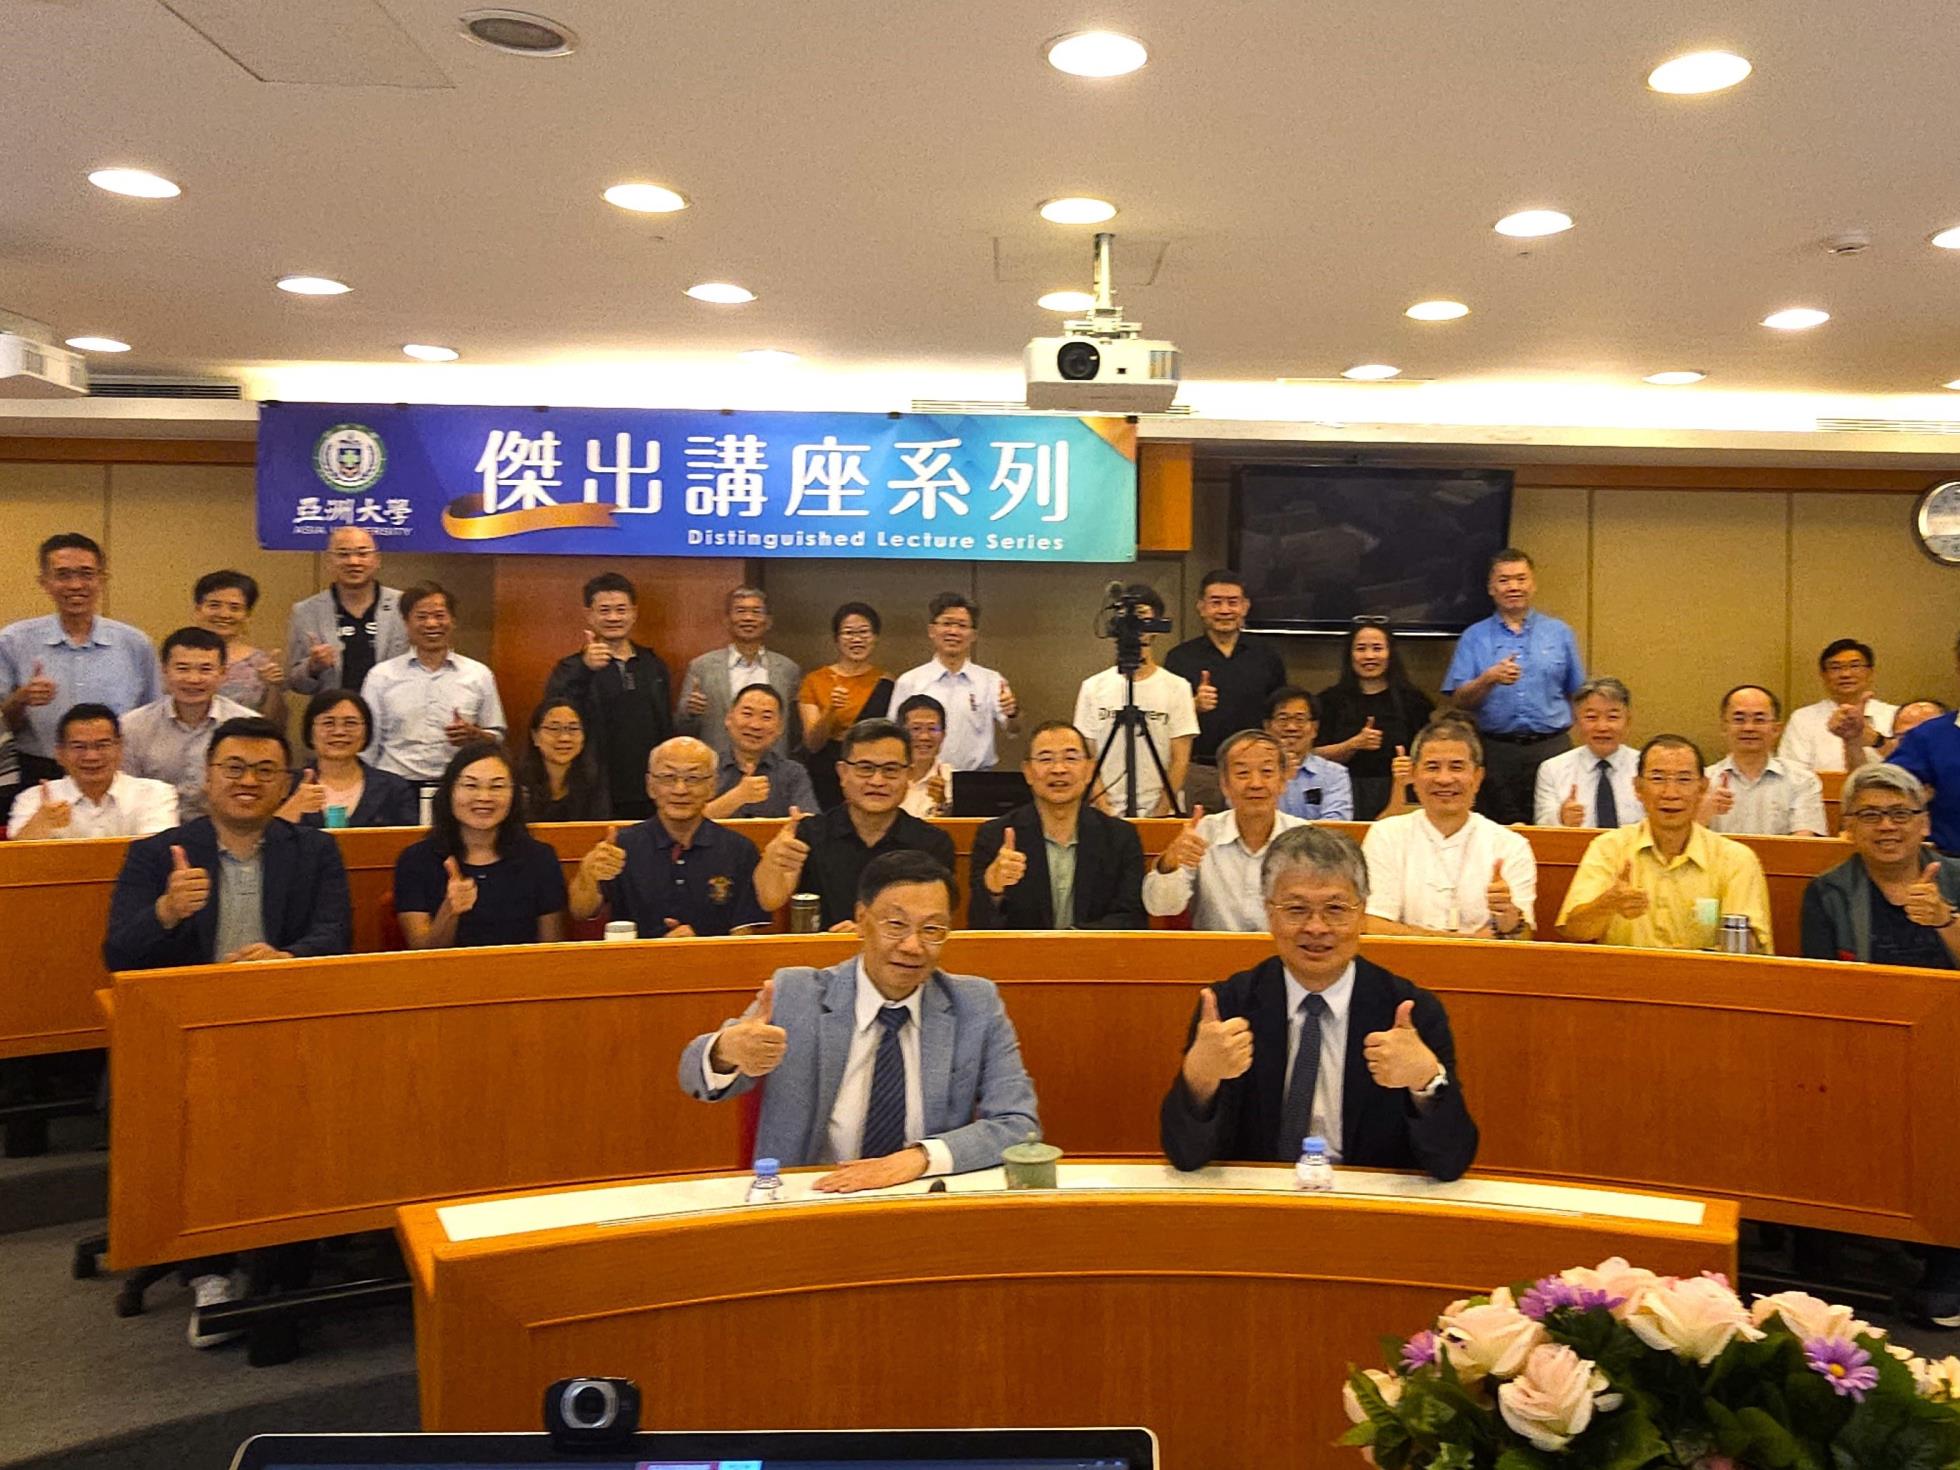 劉國偉校長前往亞洲大學演講  分享「國際人才之培育與留用」之國際招生經驗